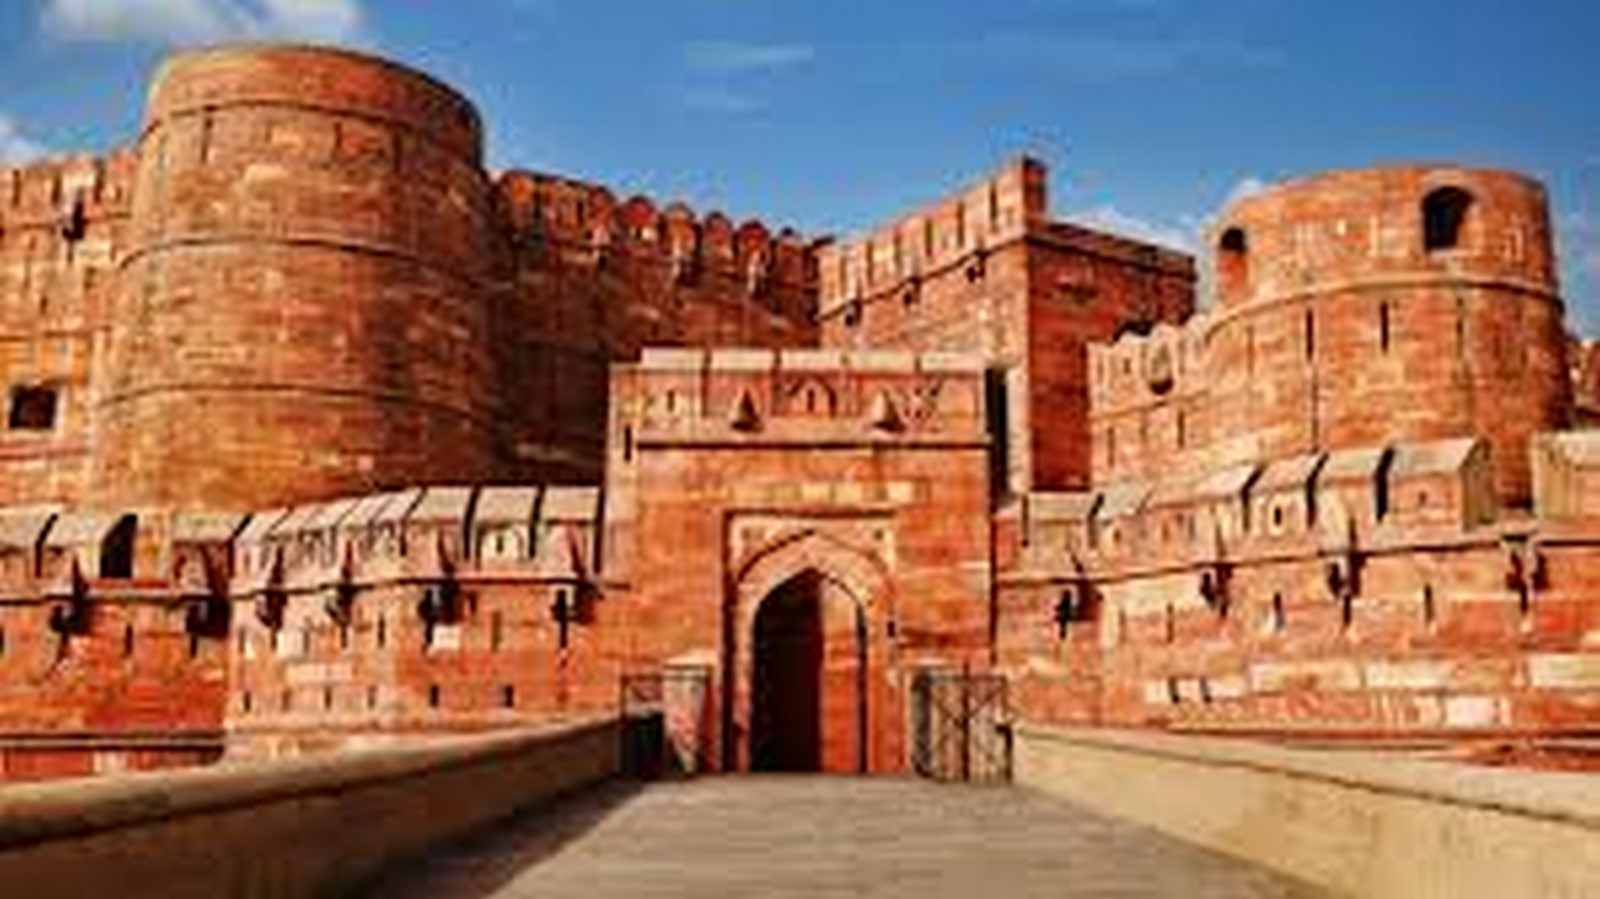 Agra Fort, Agra - Sheet1